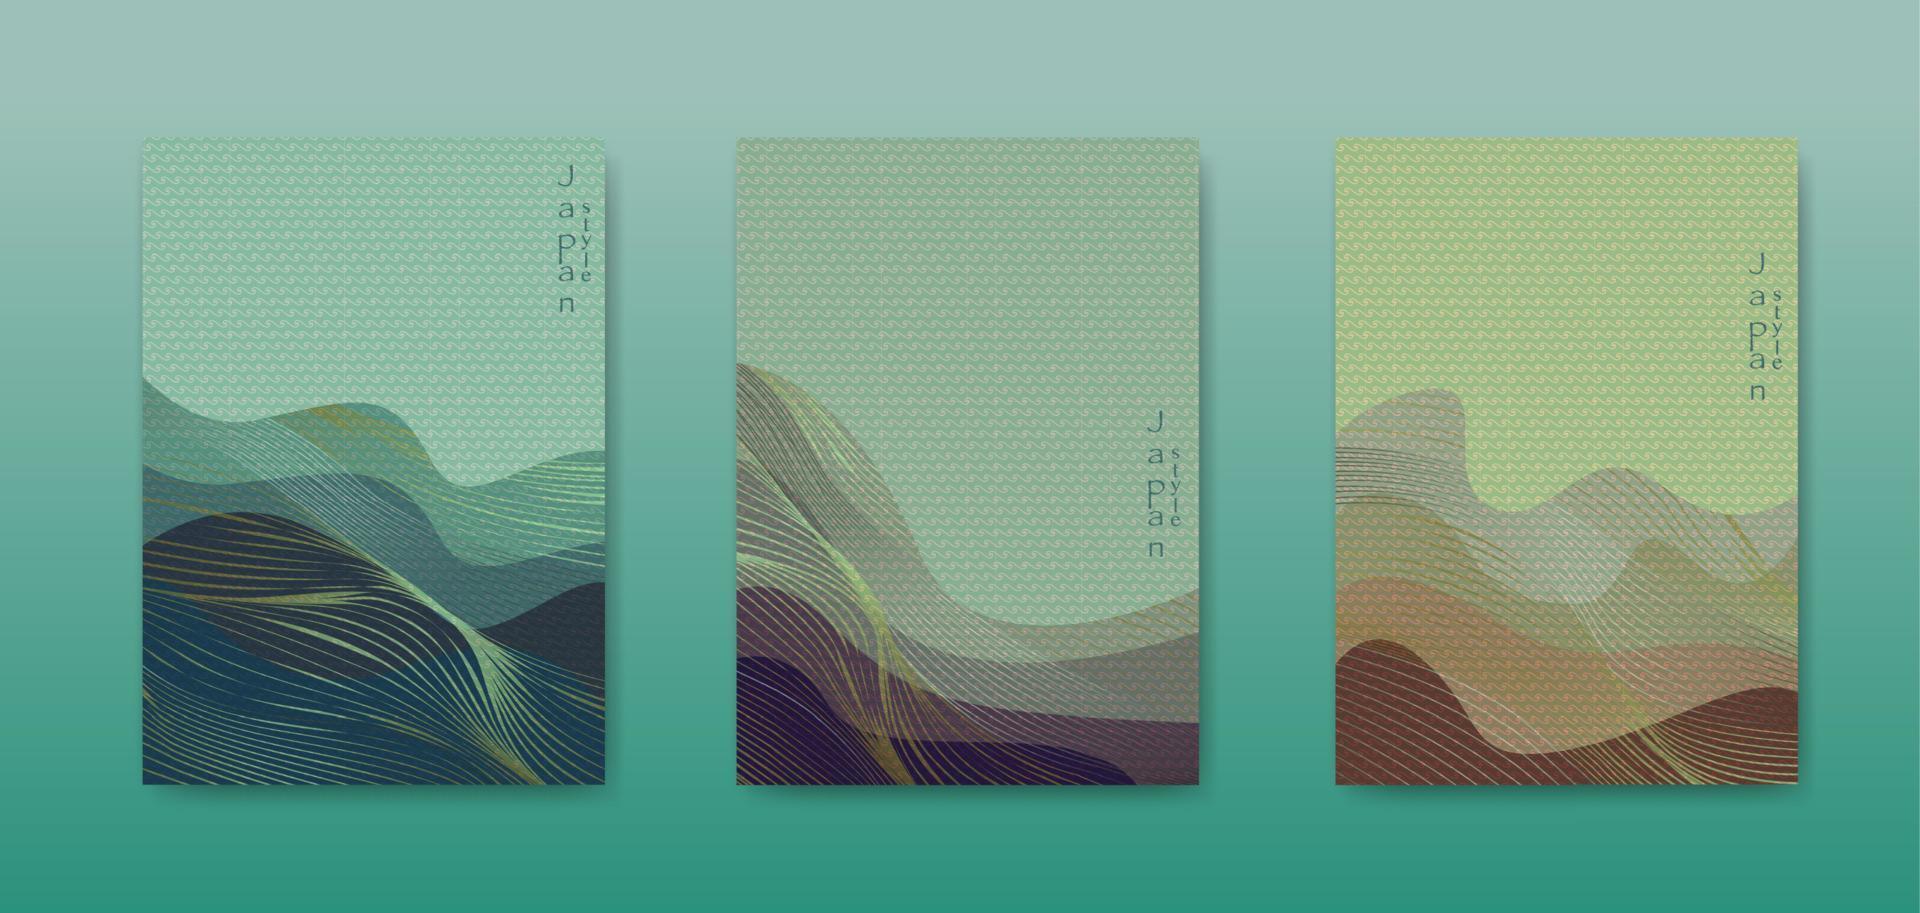 fond de paysage japonais définir des cartes d'illustration vectorielle de modèle d'onde de ligne d'or. texture ondulée géométrique de modèle abstrait de luxe bleu. conception de mise en page de montagne dans un style oriental, brochure verticale vecteur